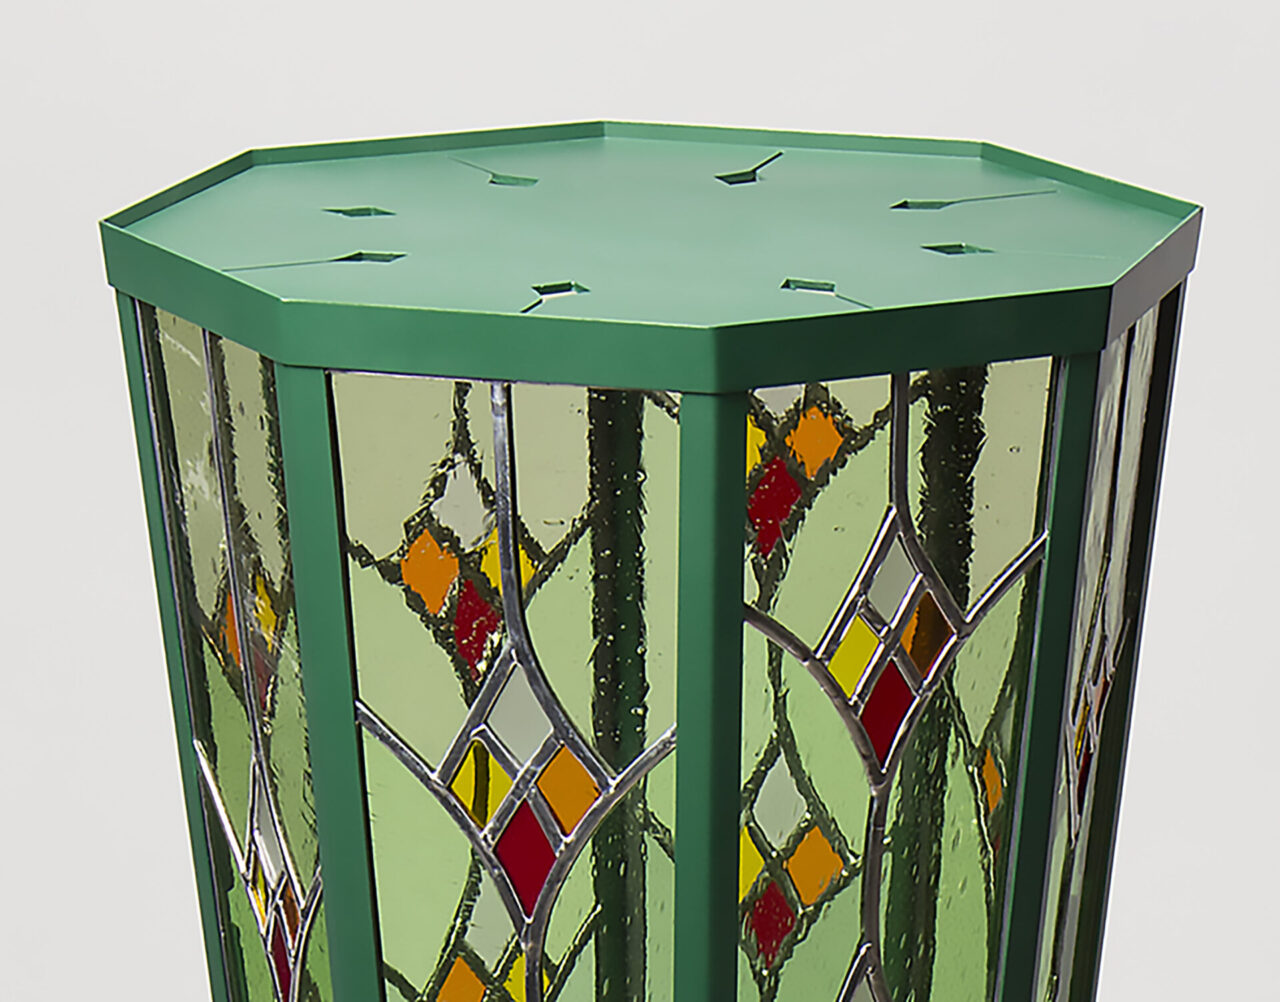 Lampe au sol, vitrail bois et métal. Couleur verte. Design Bertille Laguet et Mathieur Rohrer. Fabrication suisse par Ursi Faeh.